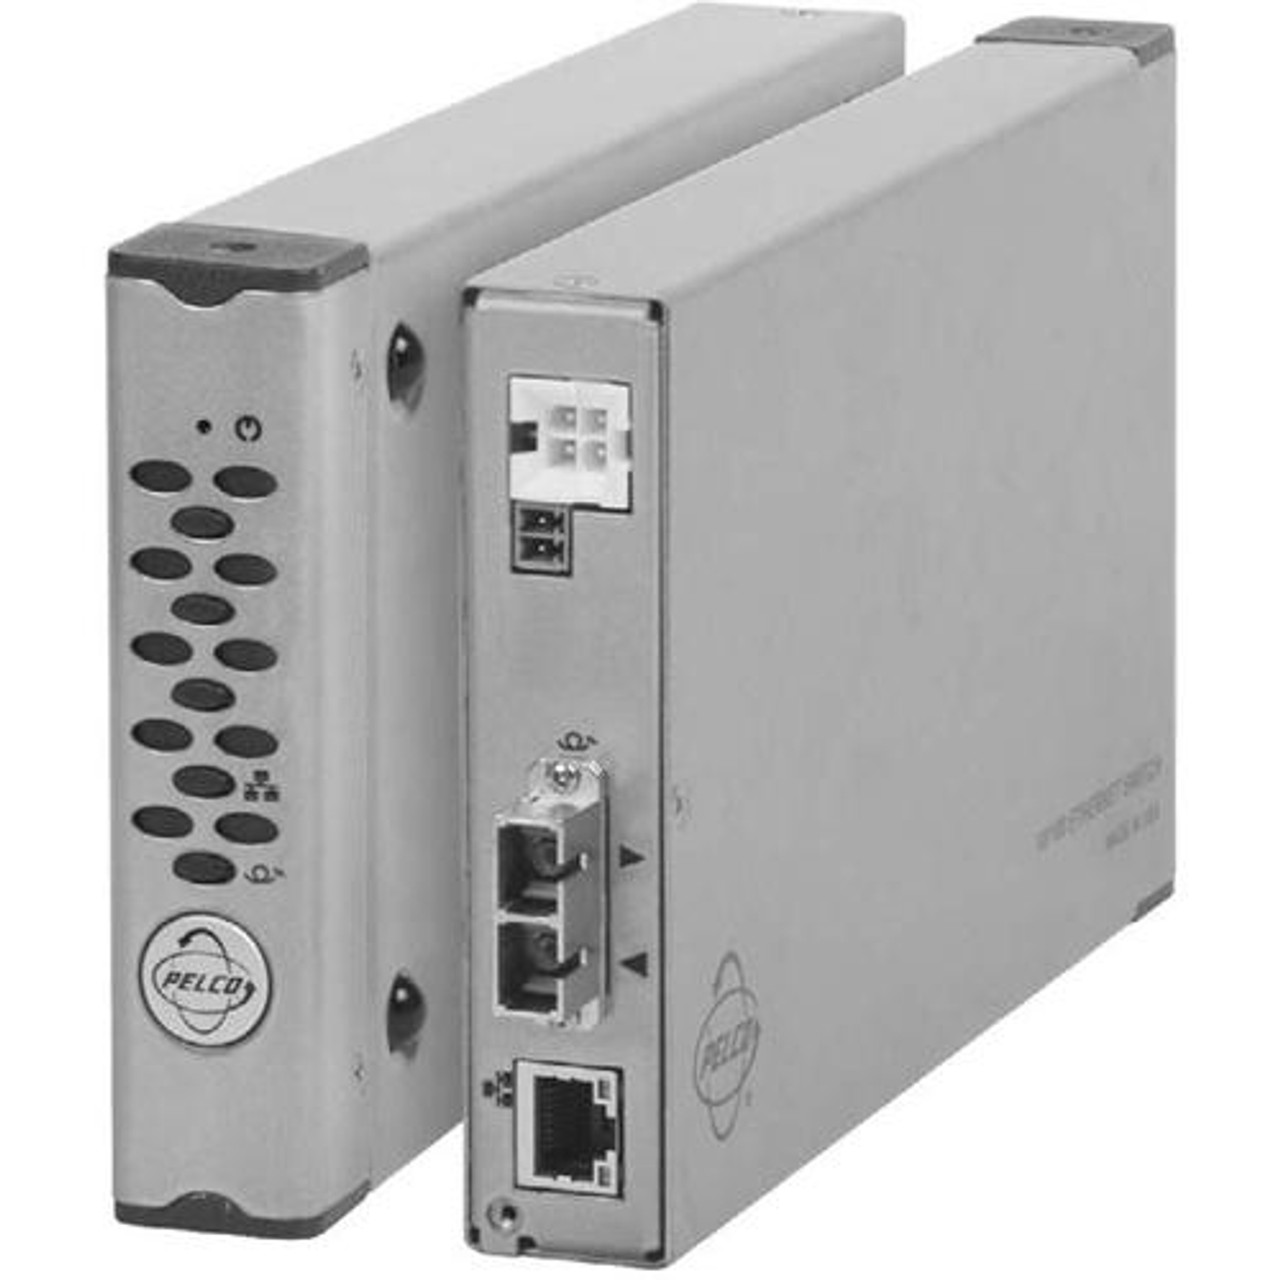 CX82012MSTR-2 Pelco CX82012MSTR-2 Unmanaged Ethernet Switch 3 Ports 1 x RJ-45 2 x ST 10/100Base-TX, 100Base-FX